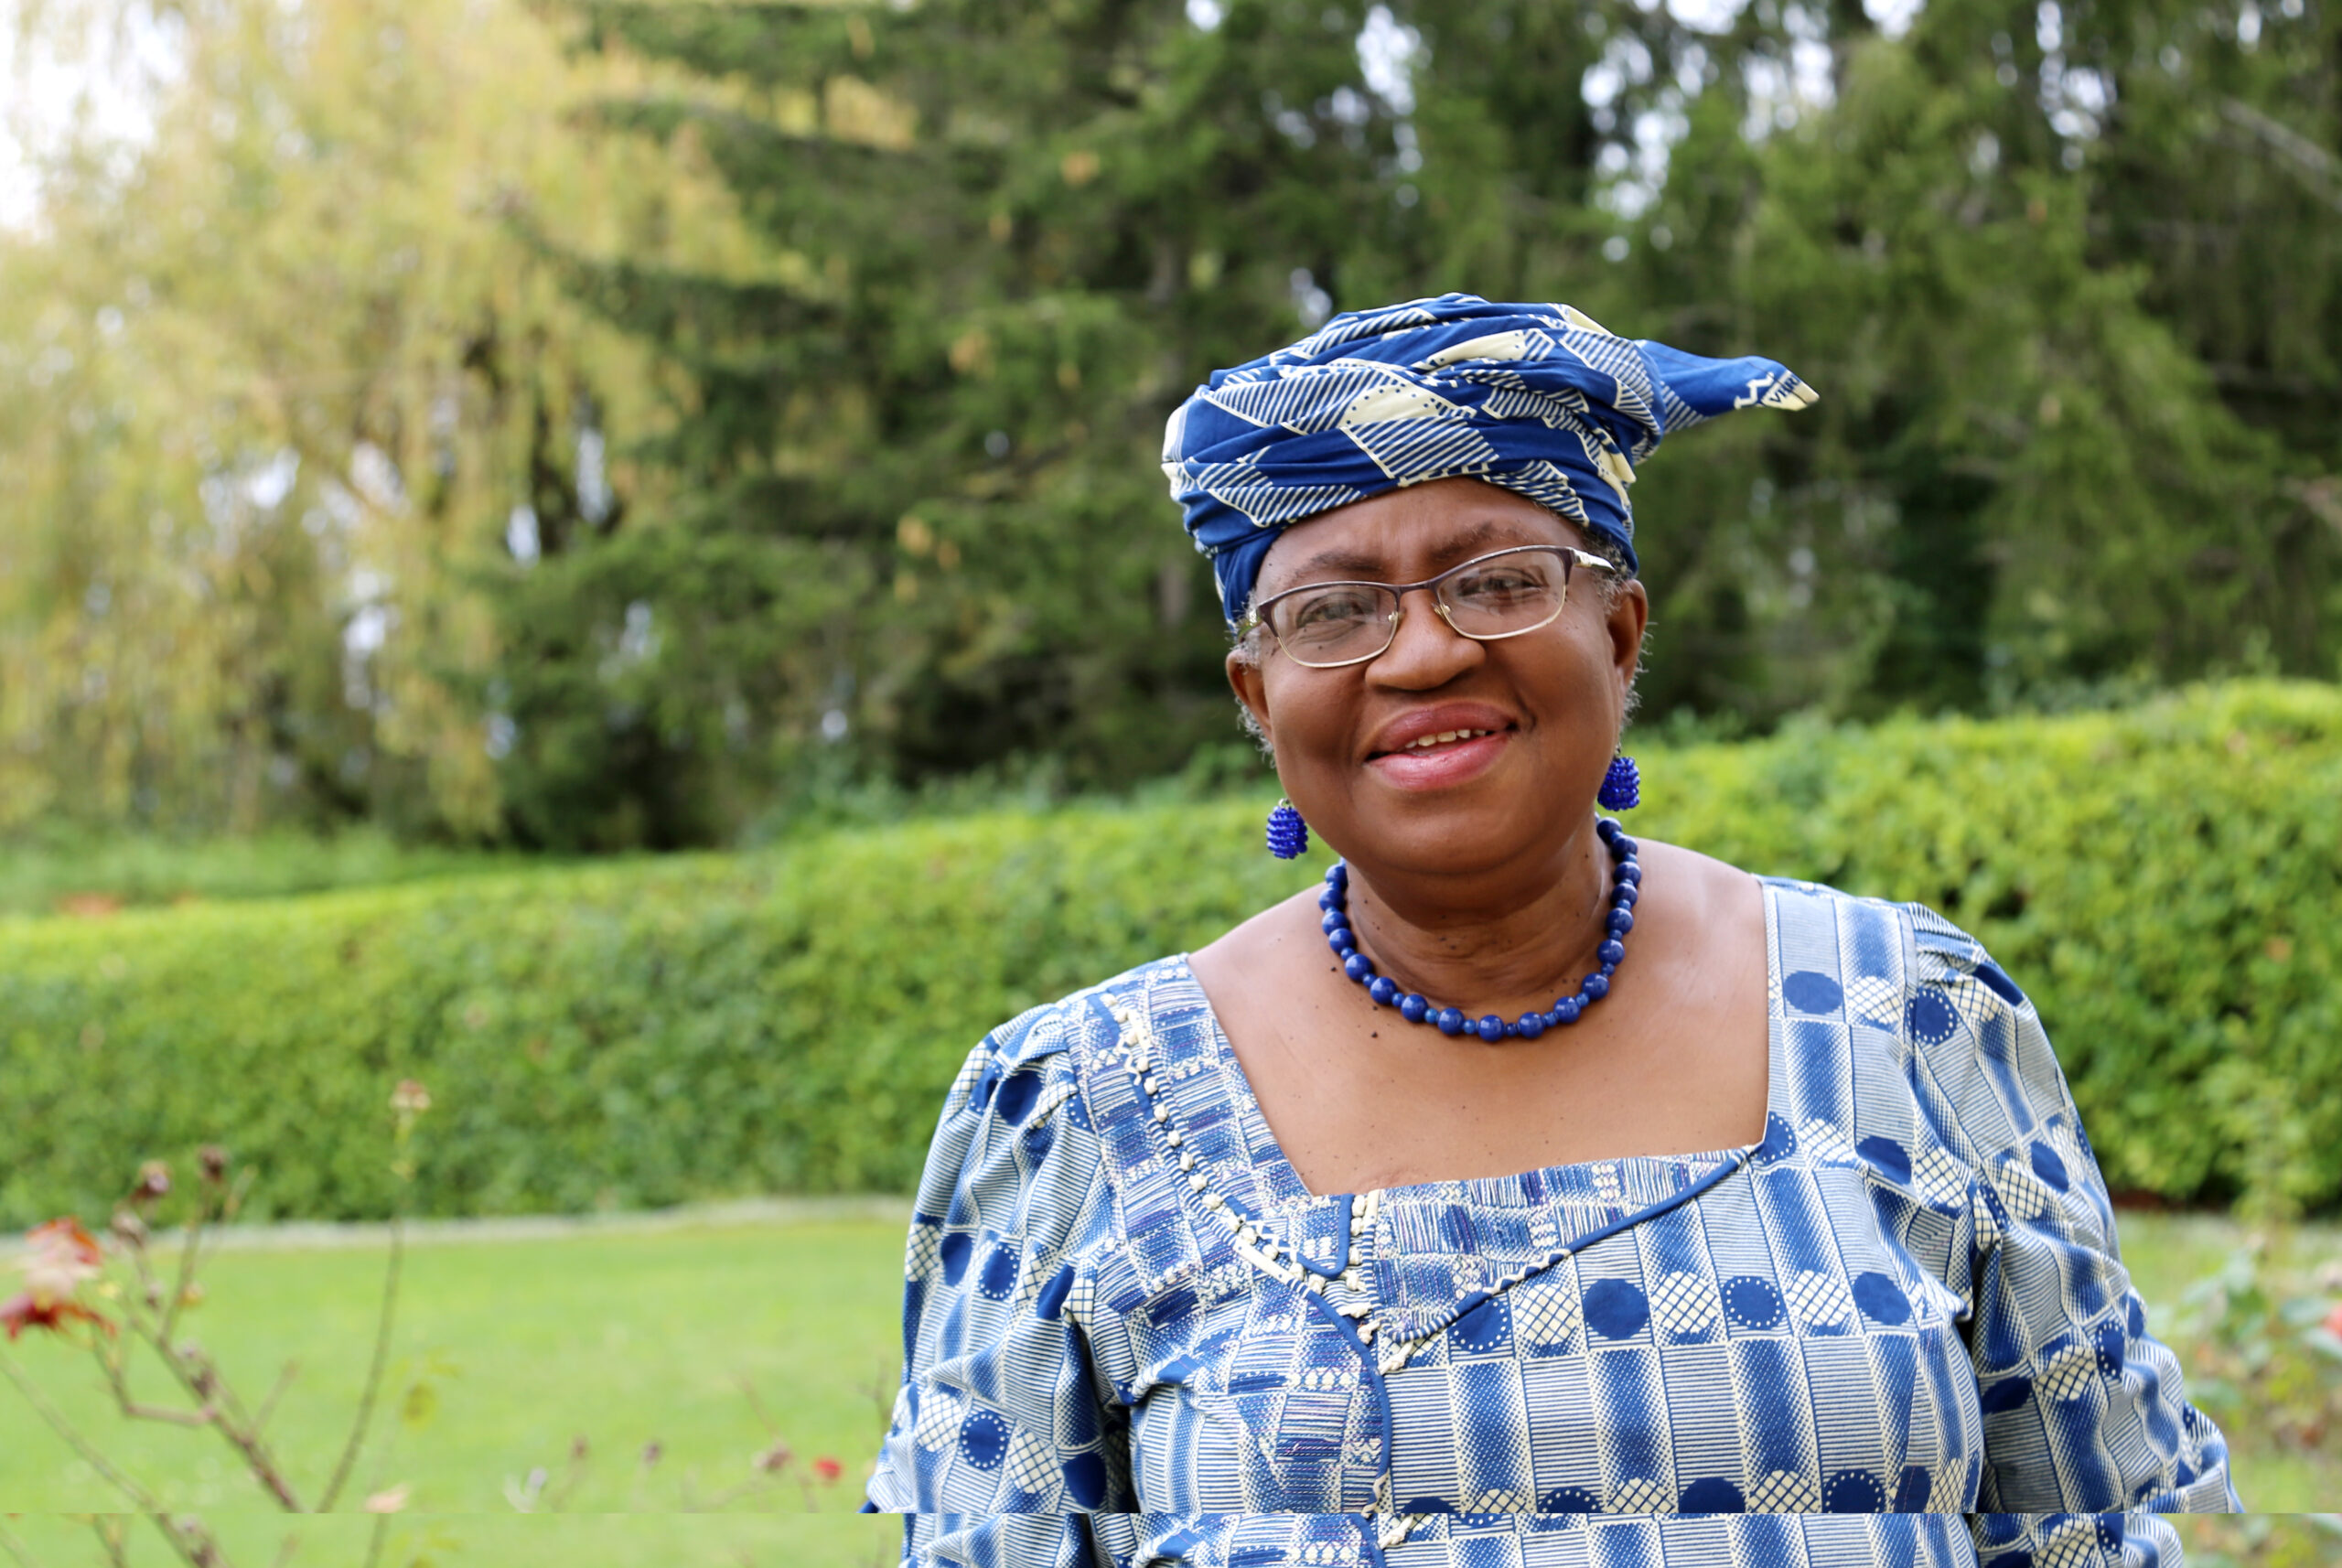 Wto: Ngozi Okonjo-Iweala